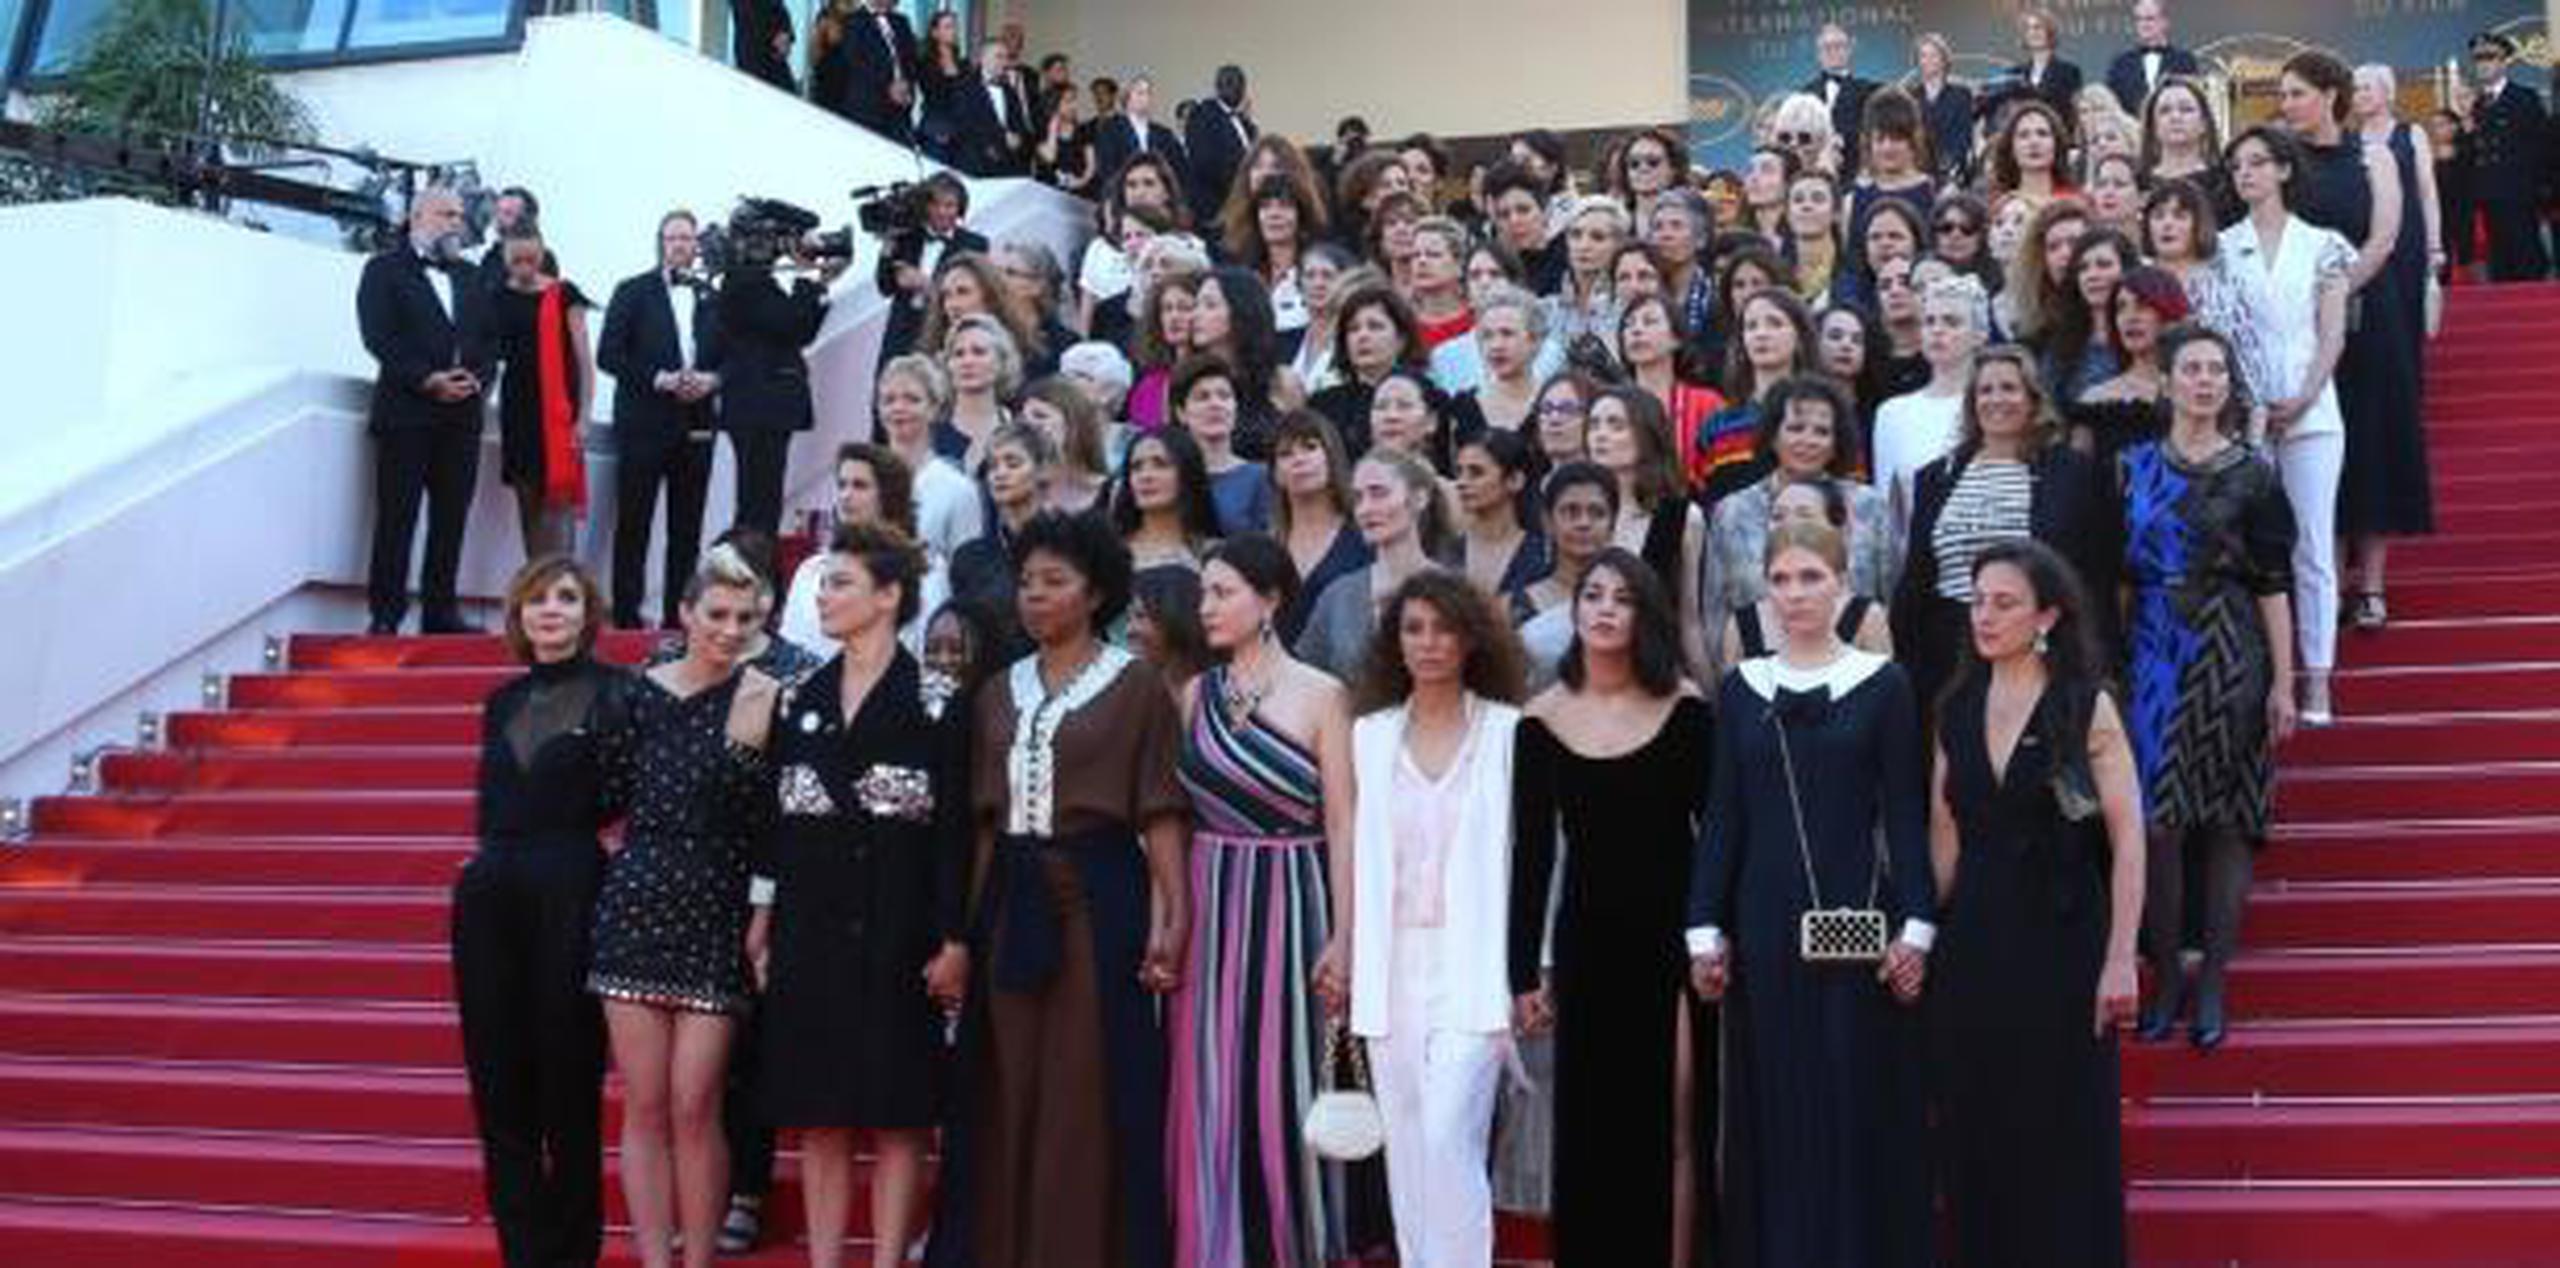 La protesta se realizó antes del estreno de “Girls of the Sun”, de la cineasta francesa Eva Husson, acerca de un batallón kurdo integrado exclusivamente por mujeres.  (AP)